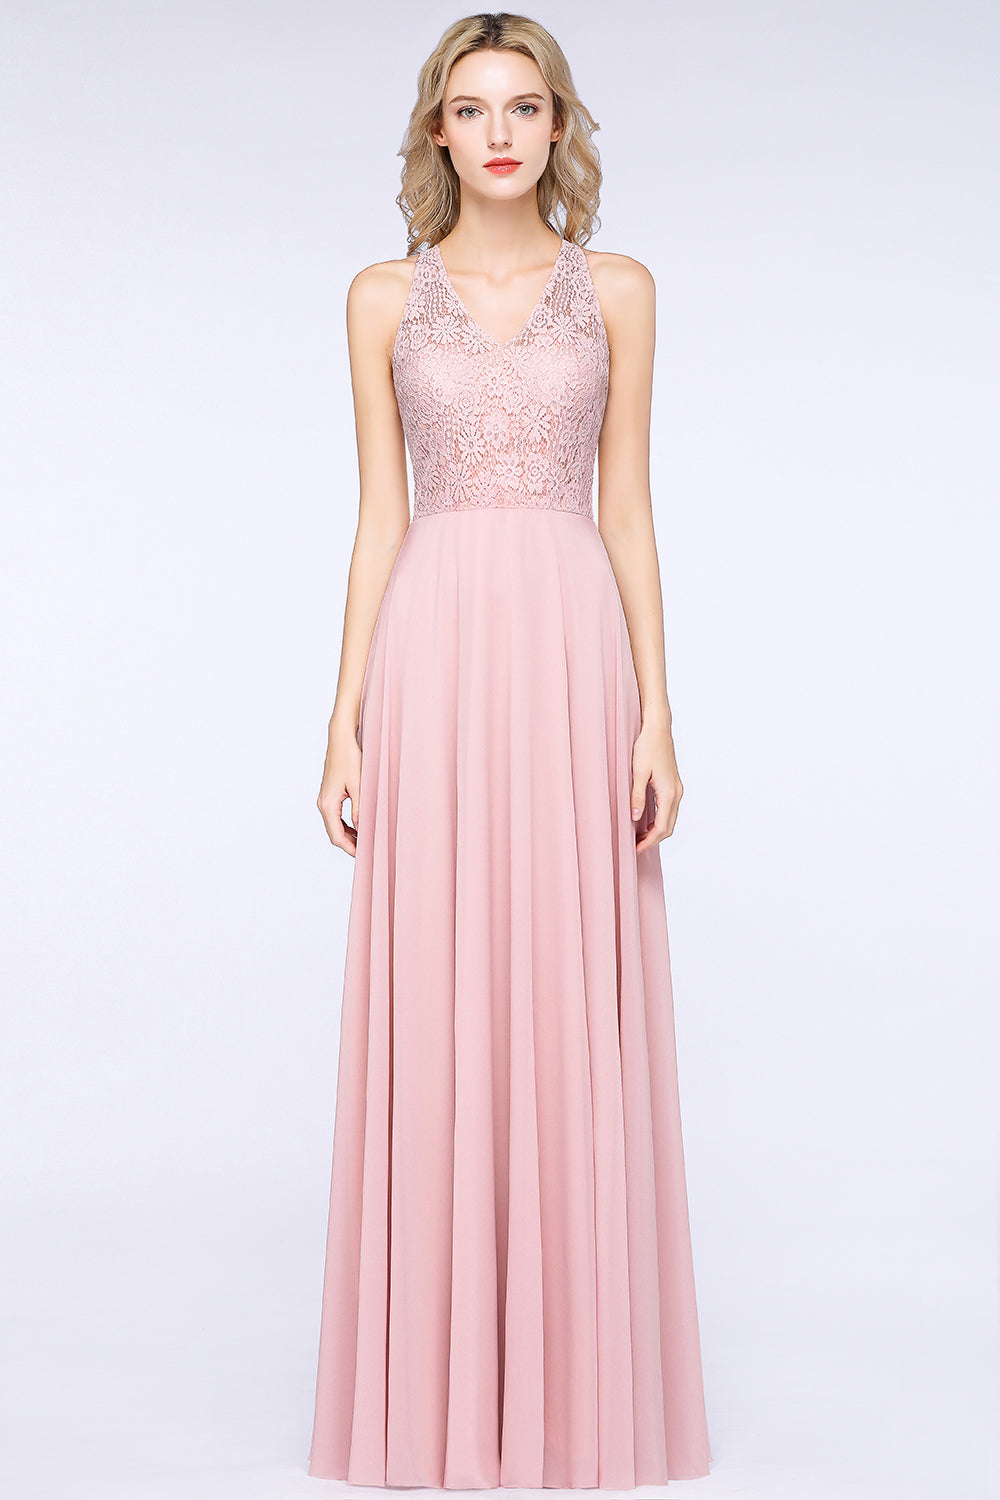 Elegant Long A-line Lace Chiffon Bridesmaid Dress-BIZTUNNEL